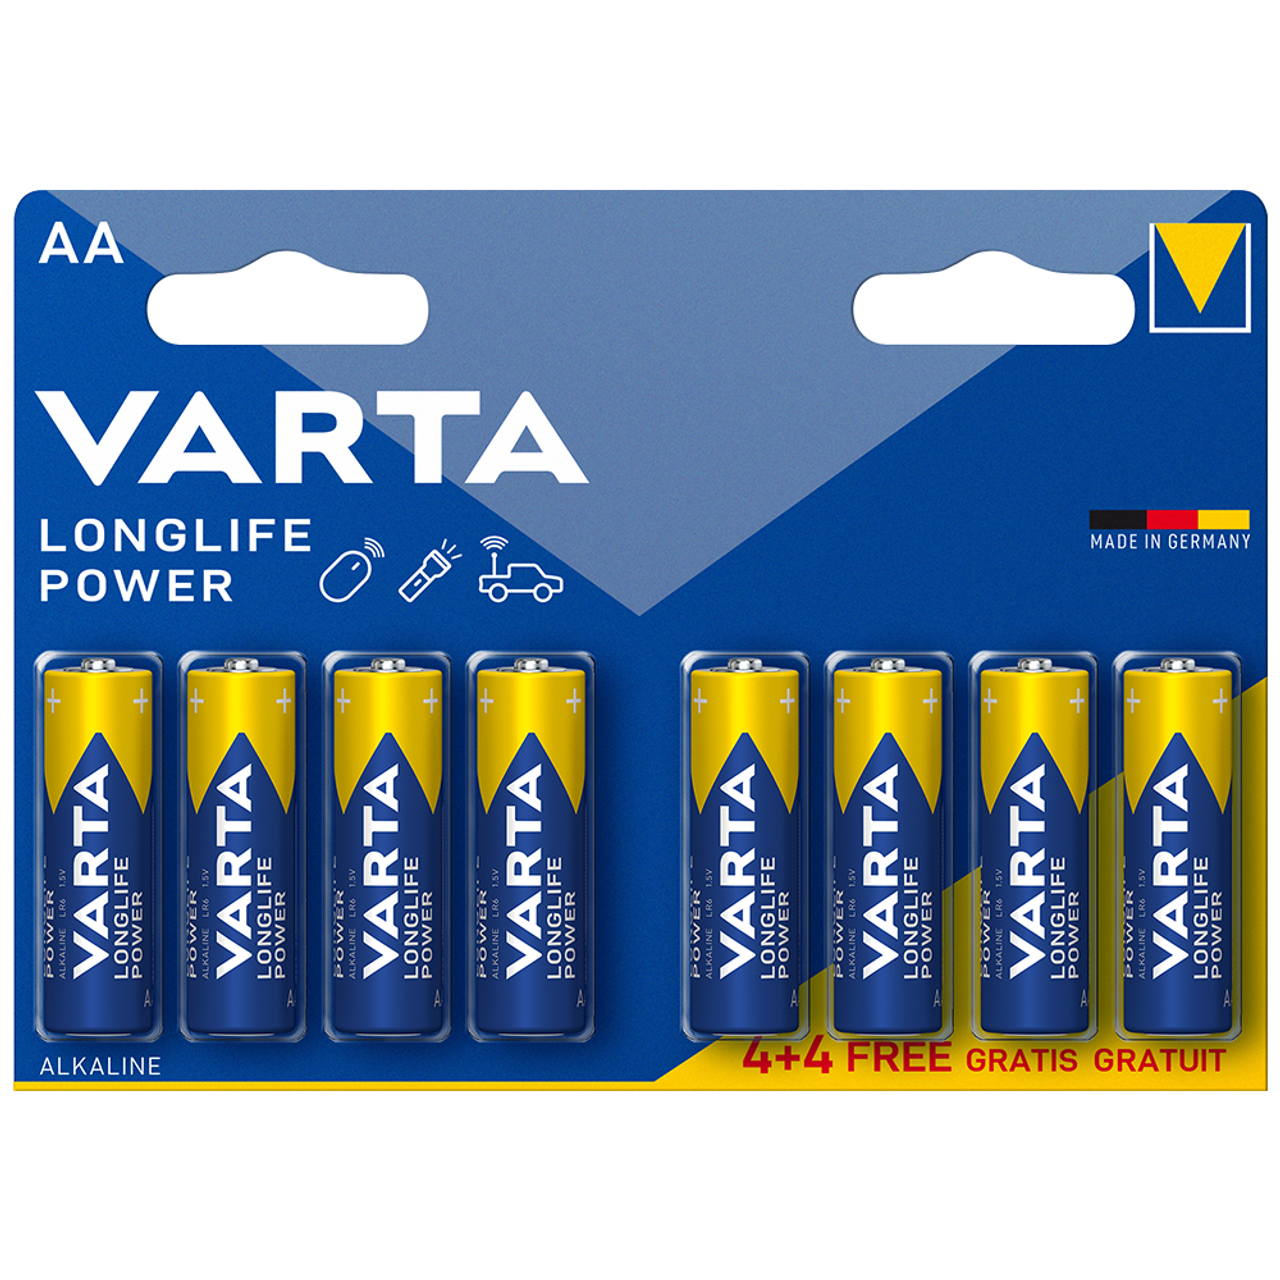  Varta Longlife Power AA Alkaline Batteries LR6 - Pack of 10 -  Packaging May Vary : Health & Household